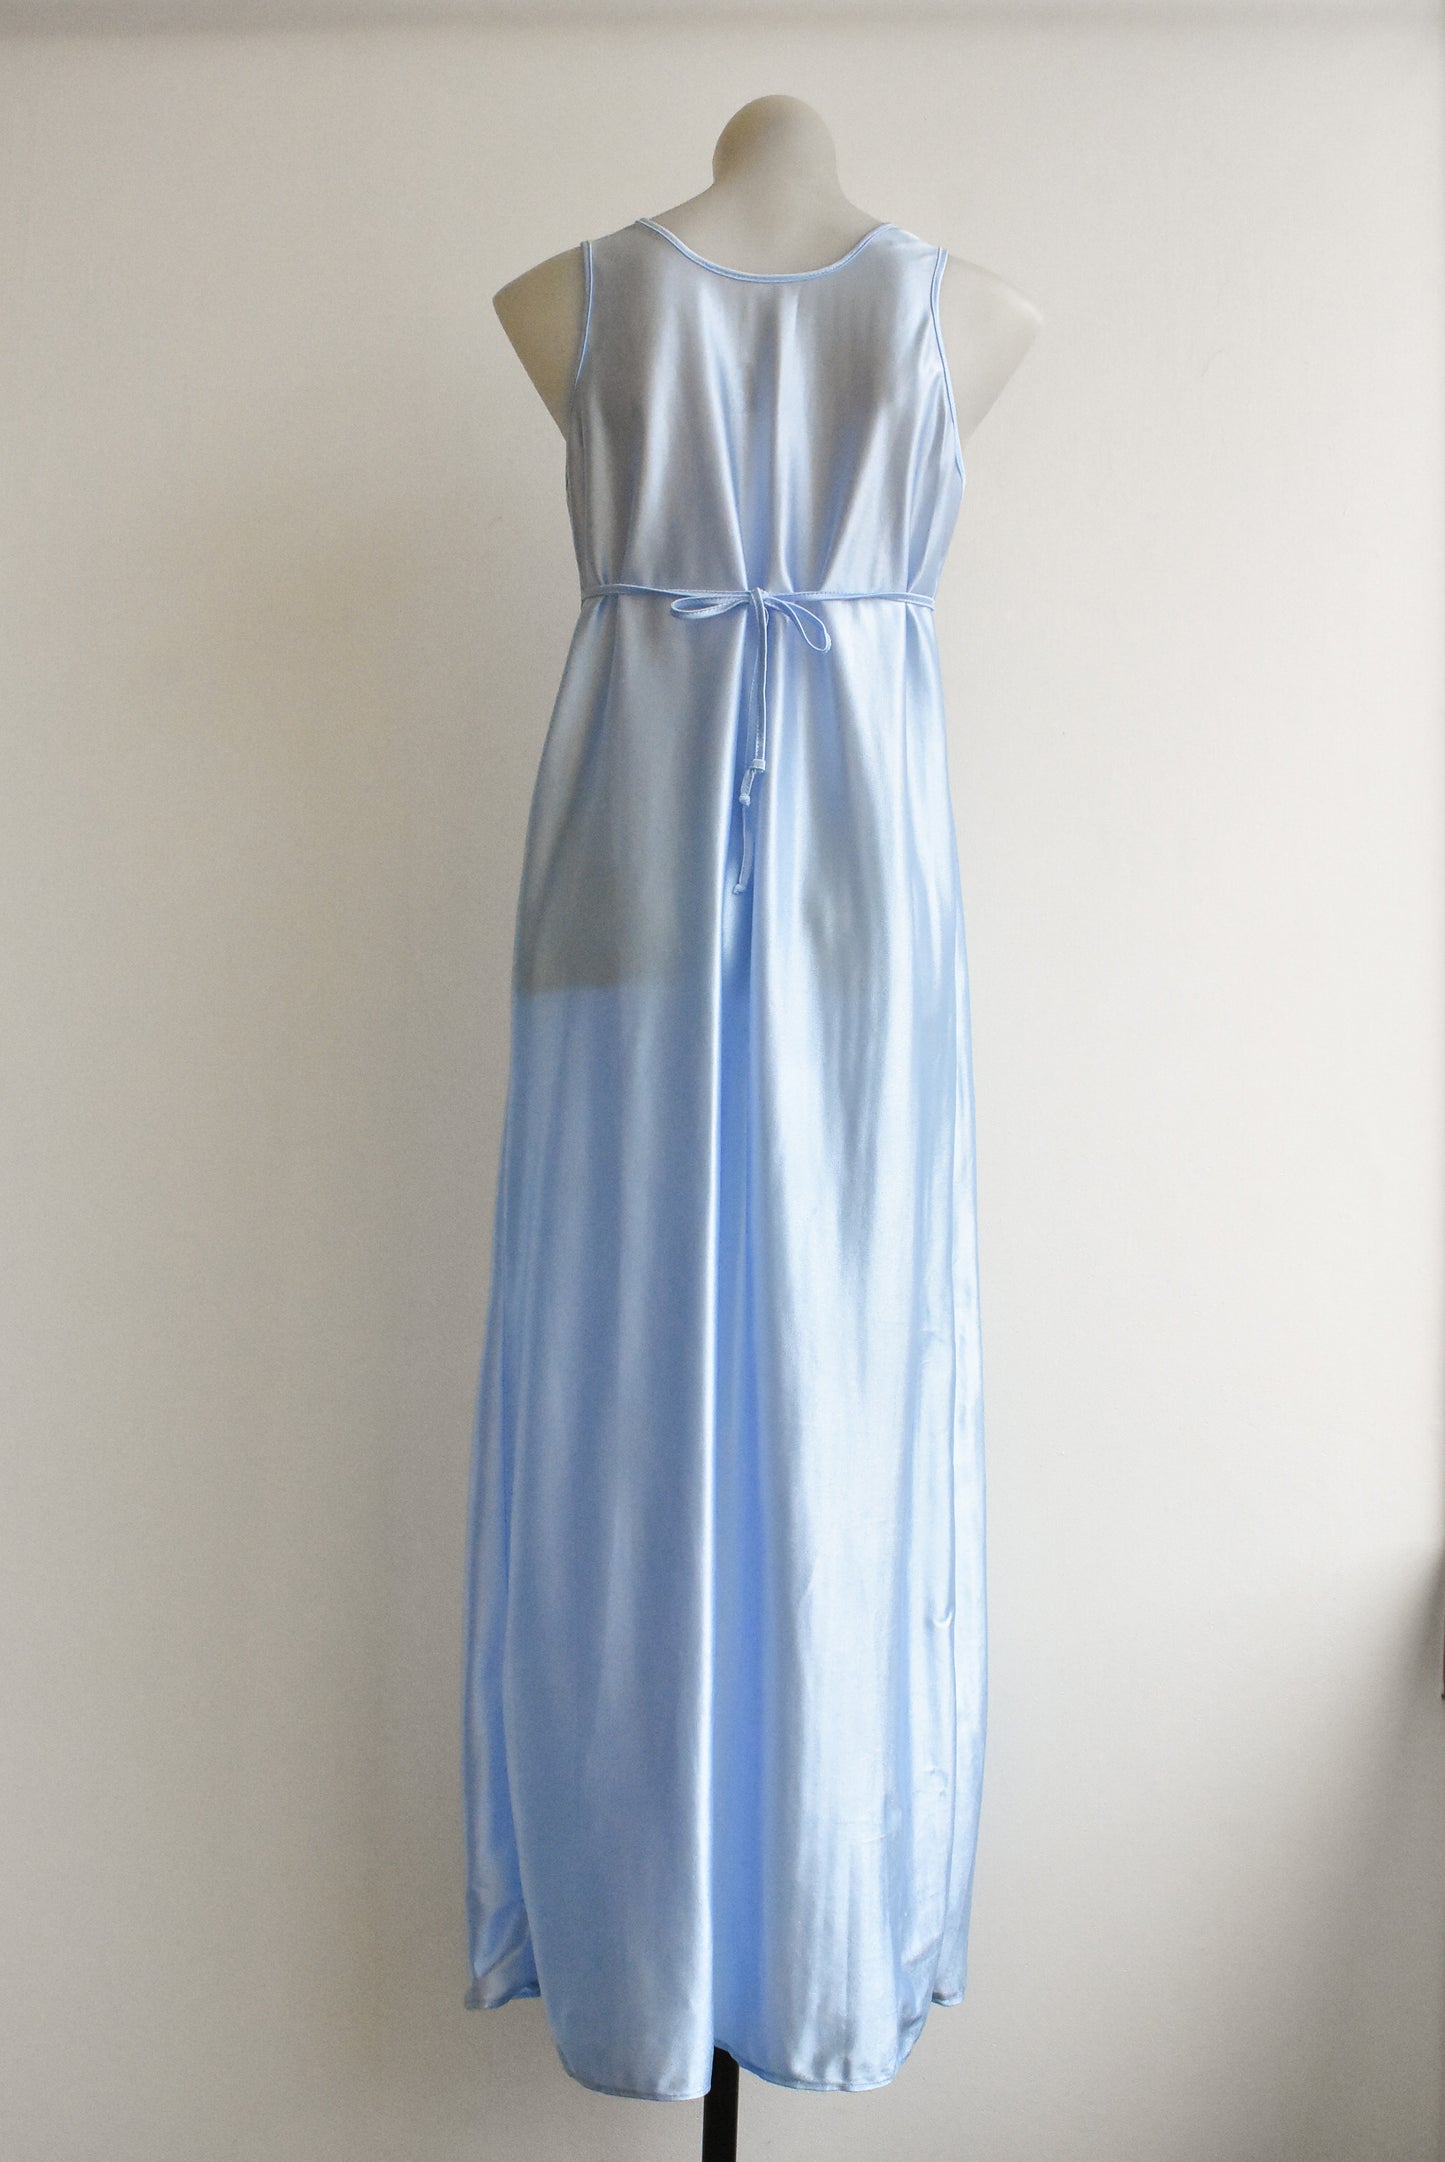 Vintage pale blue nightgown, M